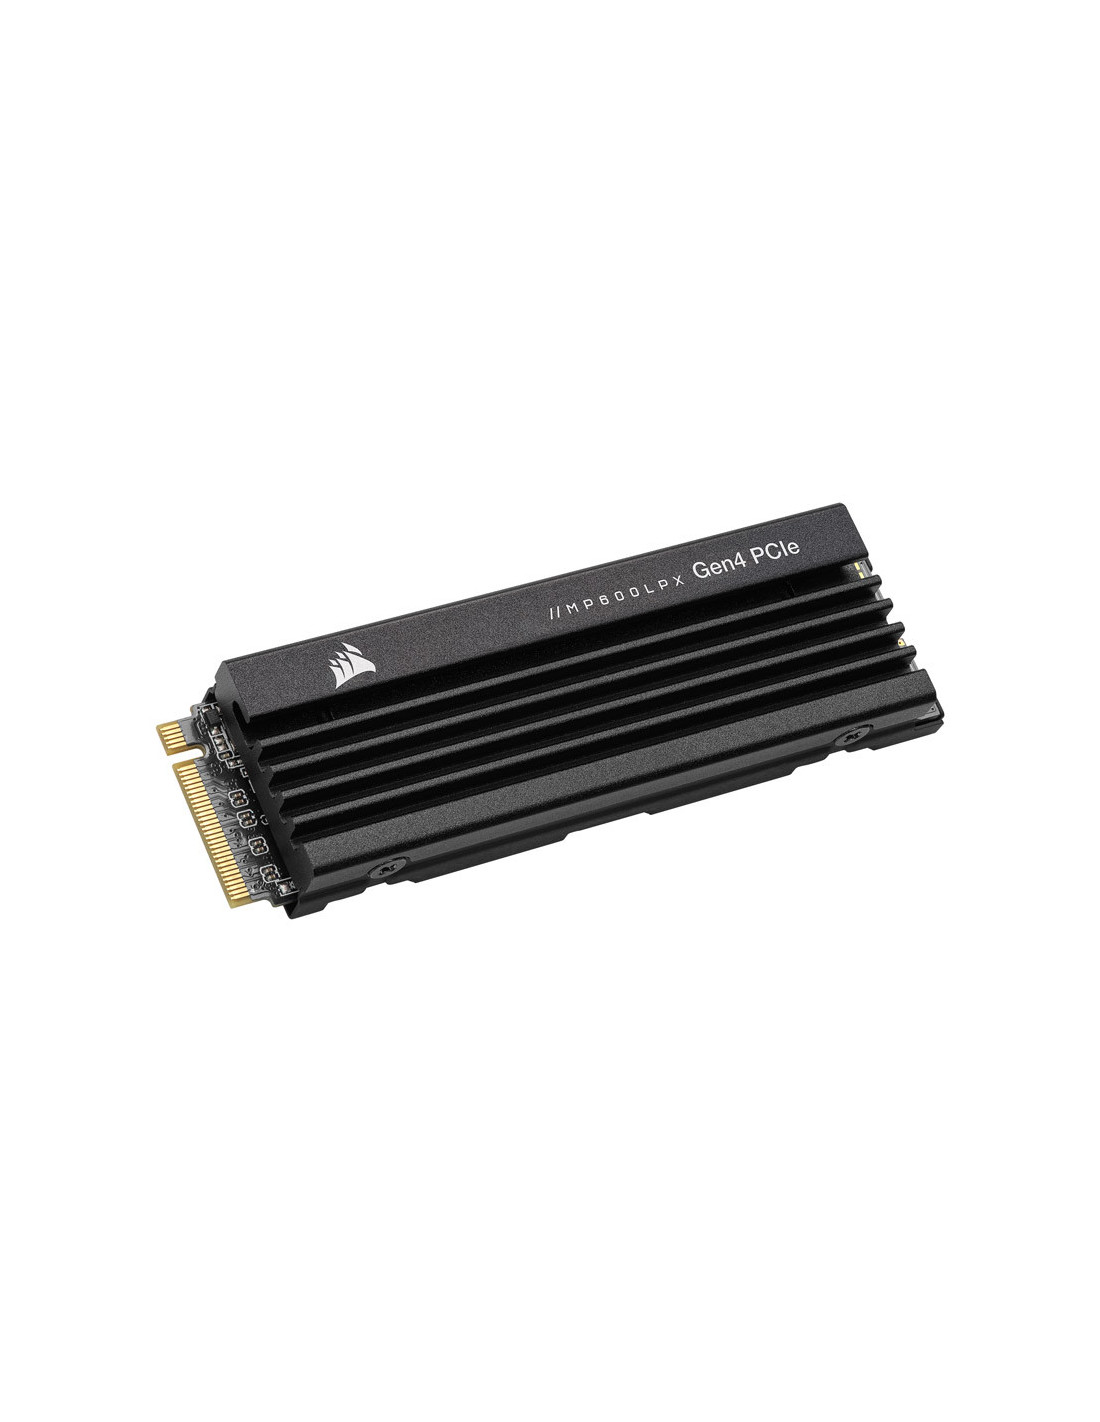 CORSAIR MP600 PRO LPX 1TB/2TB Gen4 PCIe x4 NVMe M.2 SSD 2280